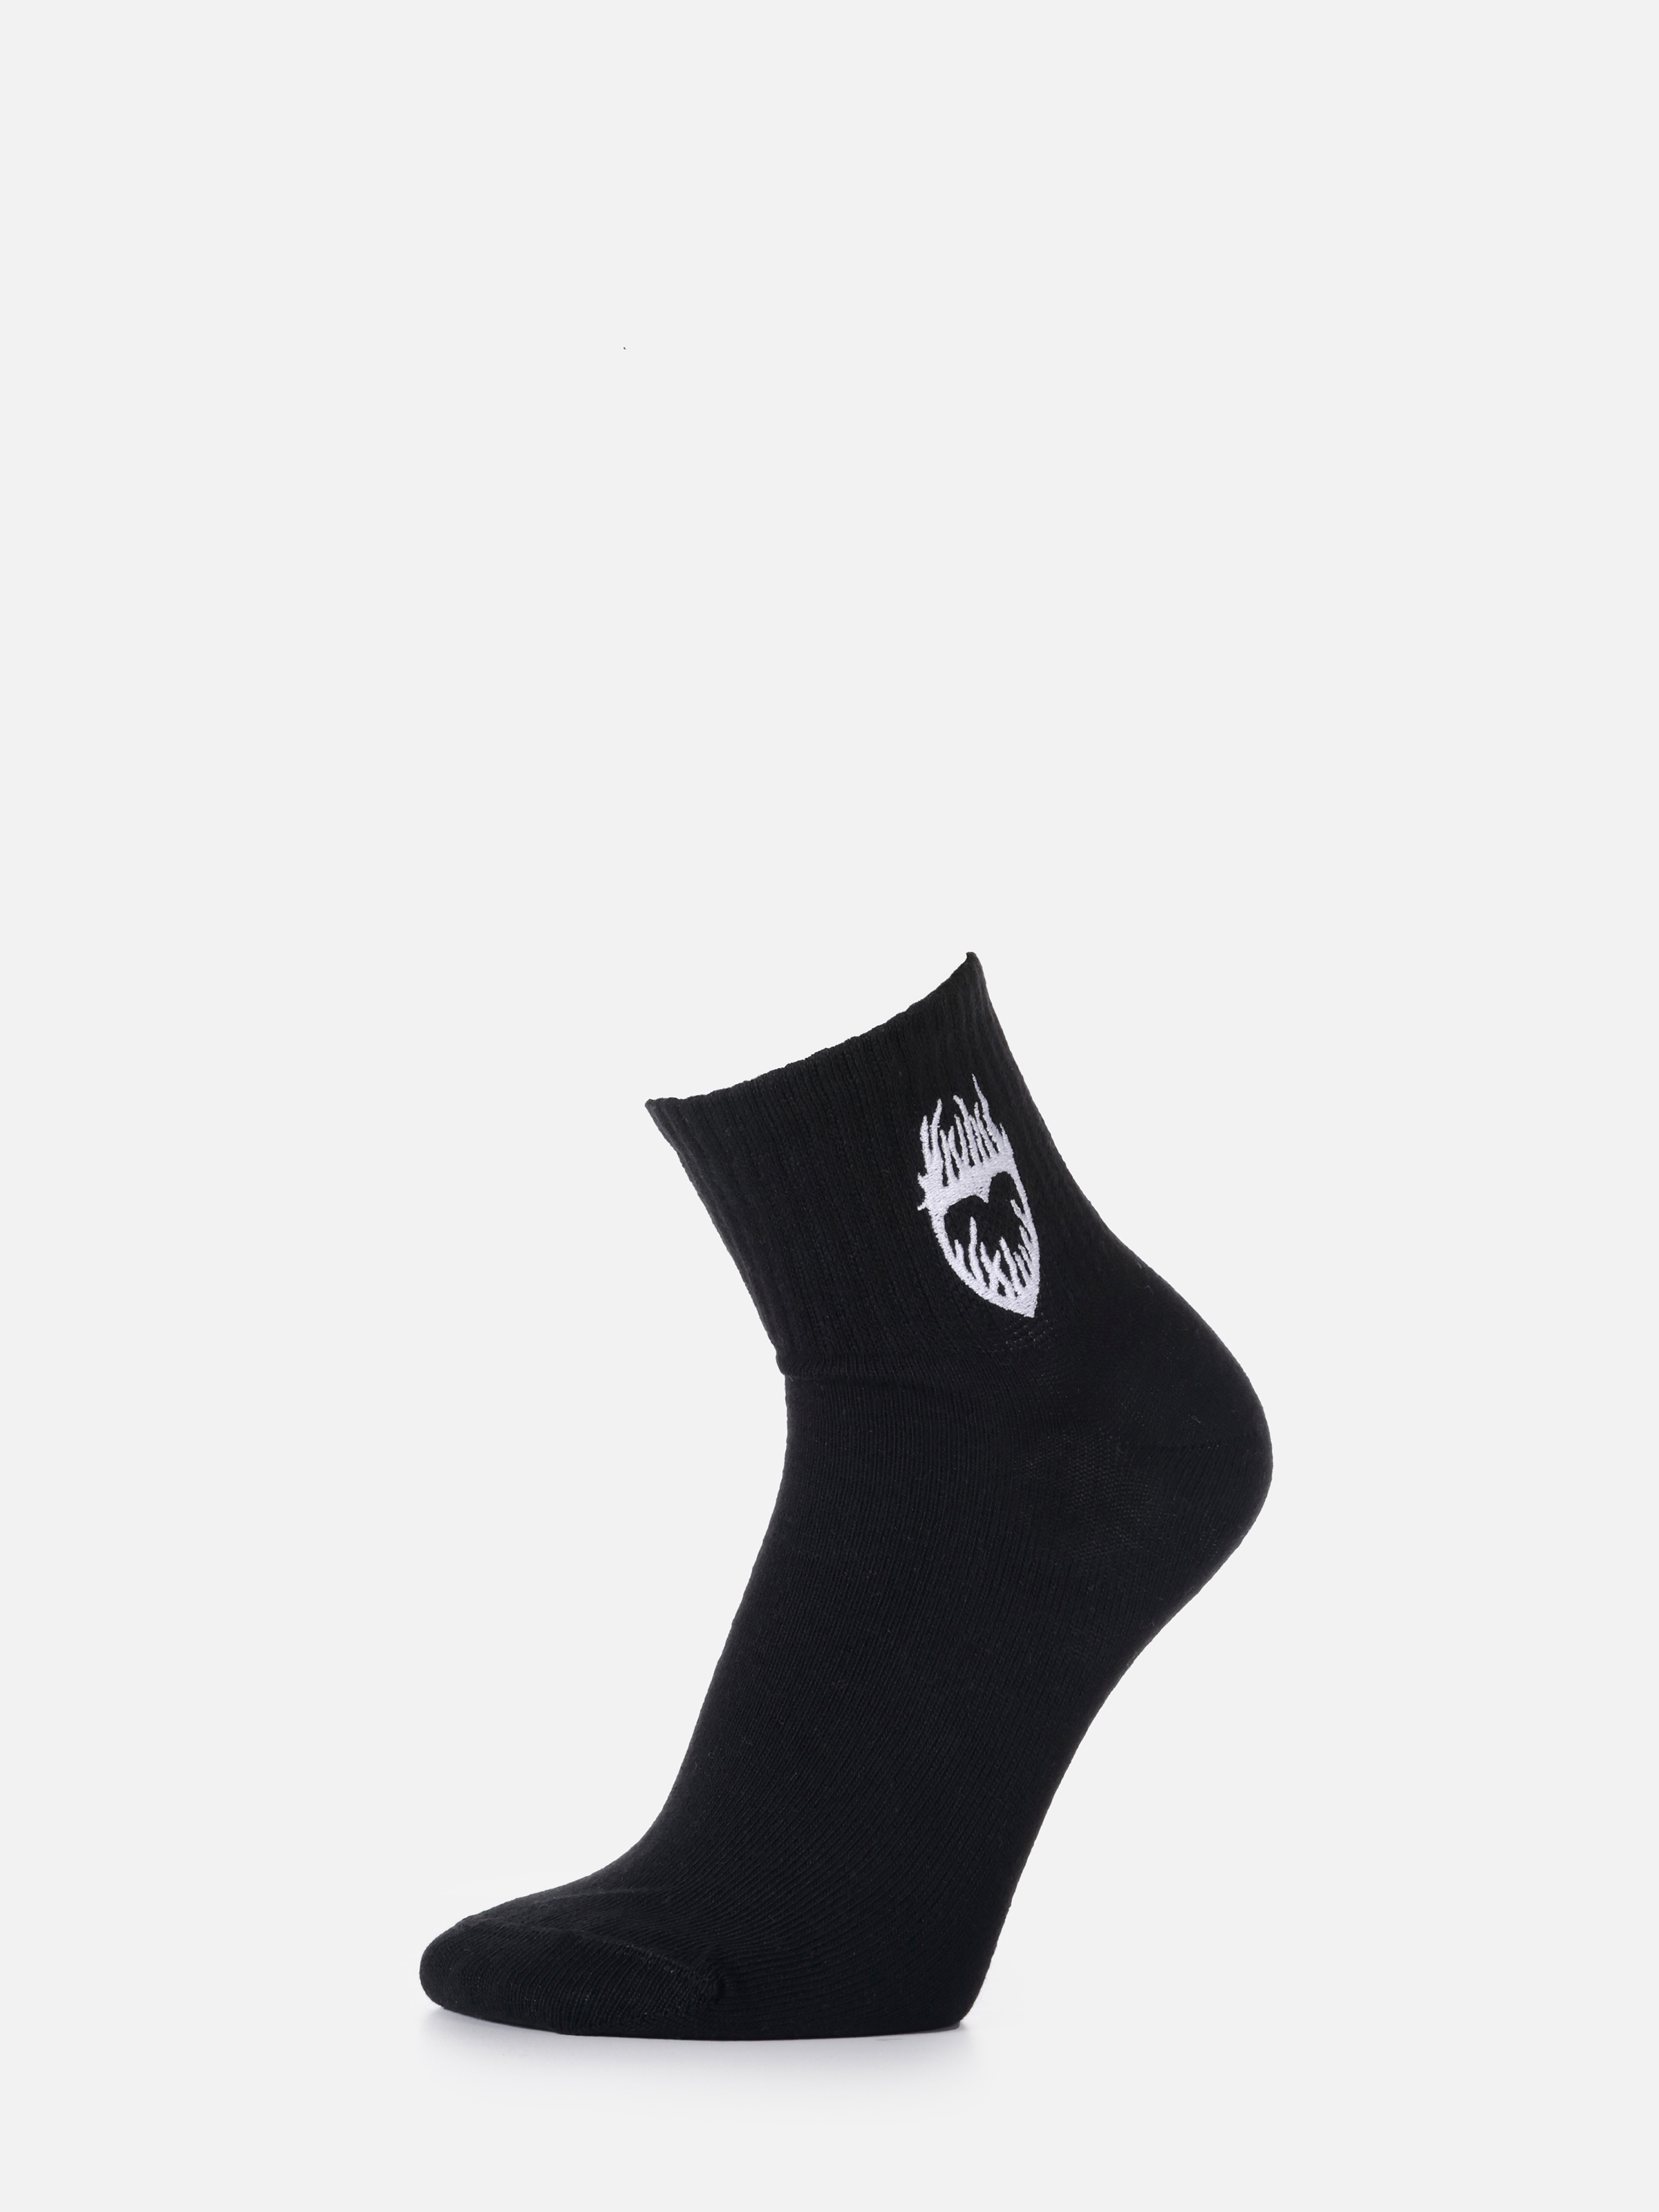 Показати інформацію про  Шкарпетки Жіночі Чорні  